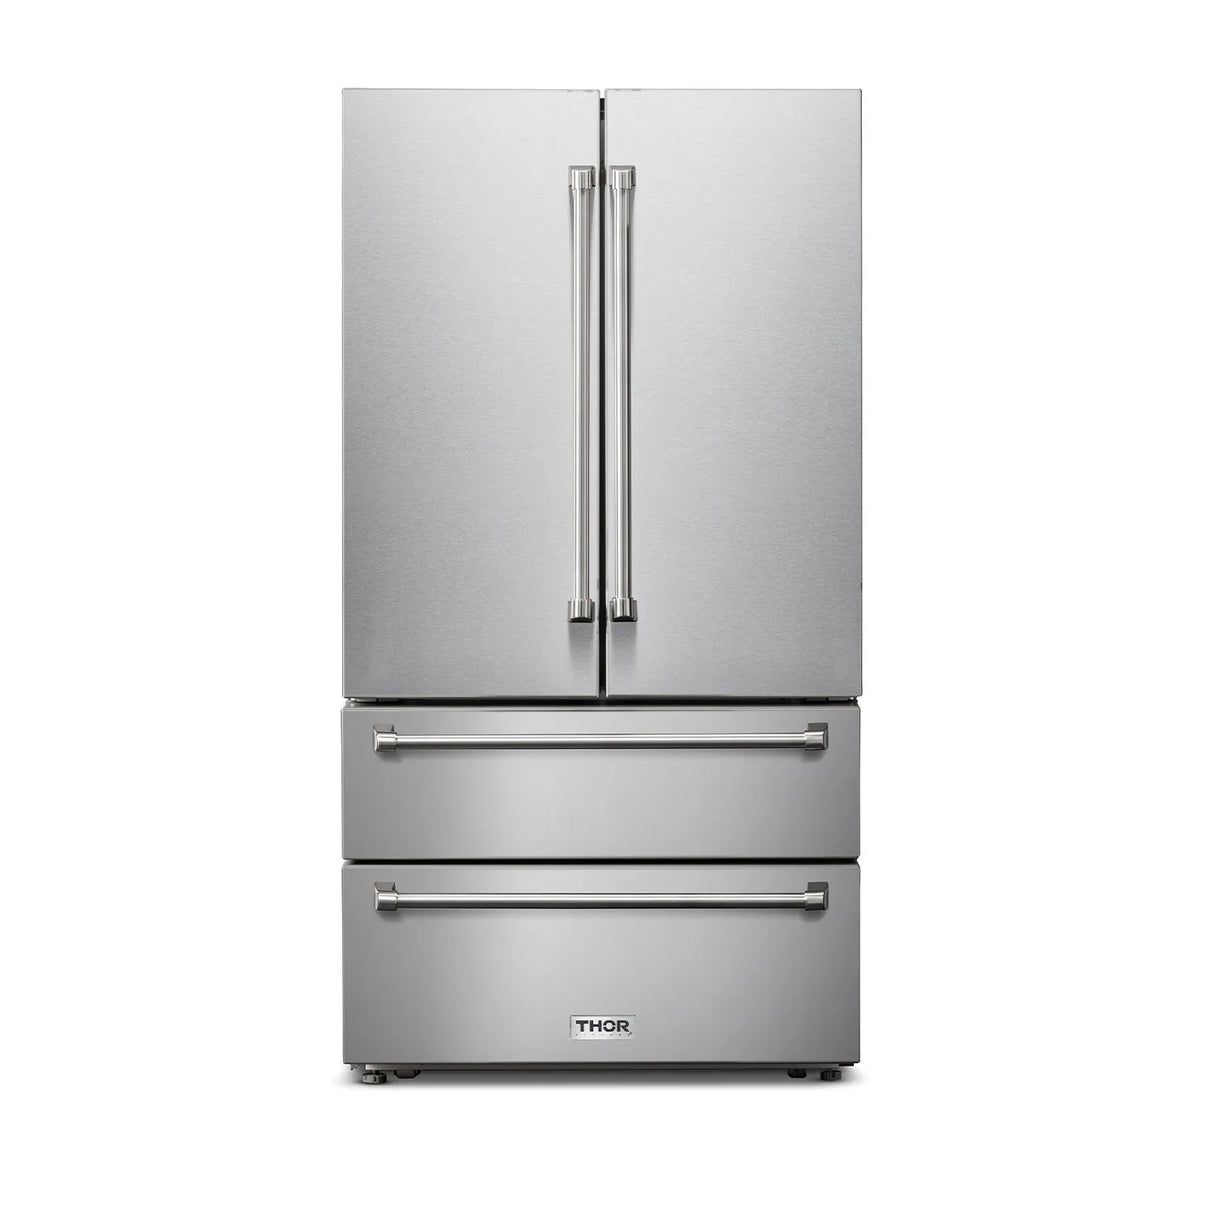 THOR Kitchen - 4-Piece Kitchen Package - 36" Liquid Propane Range, 36" Wall Mount Range Hood, 24" Dishwasher & 36" Refrigerator